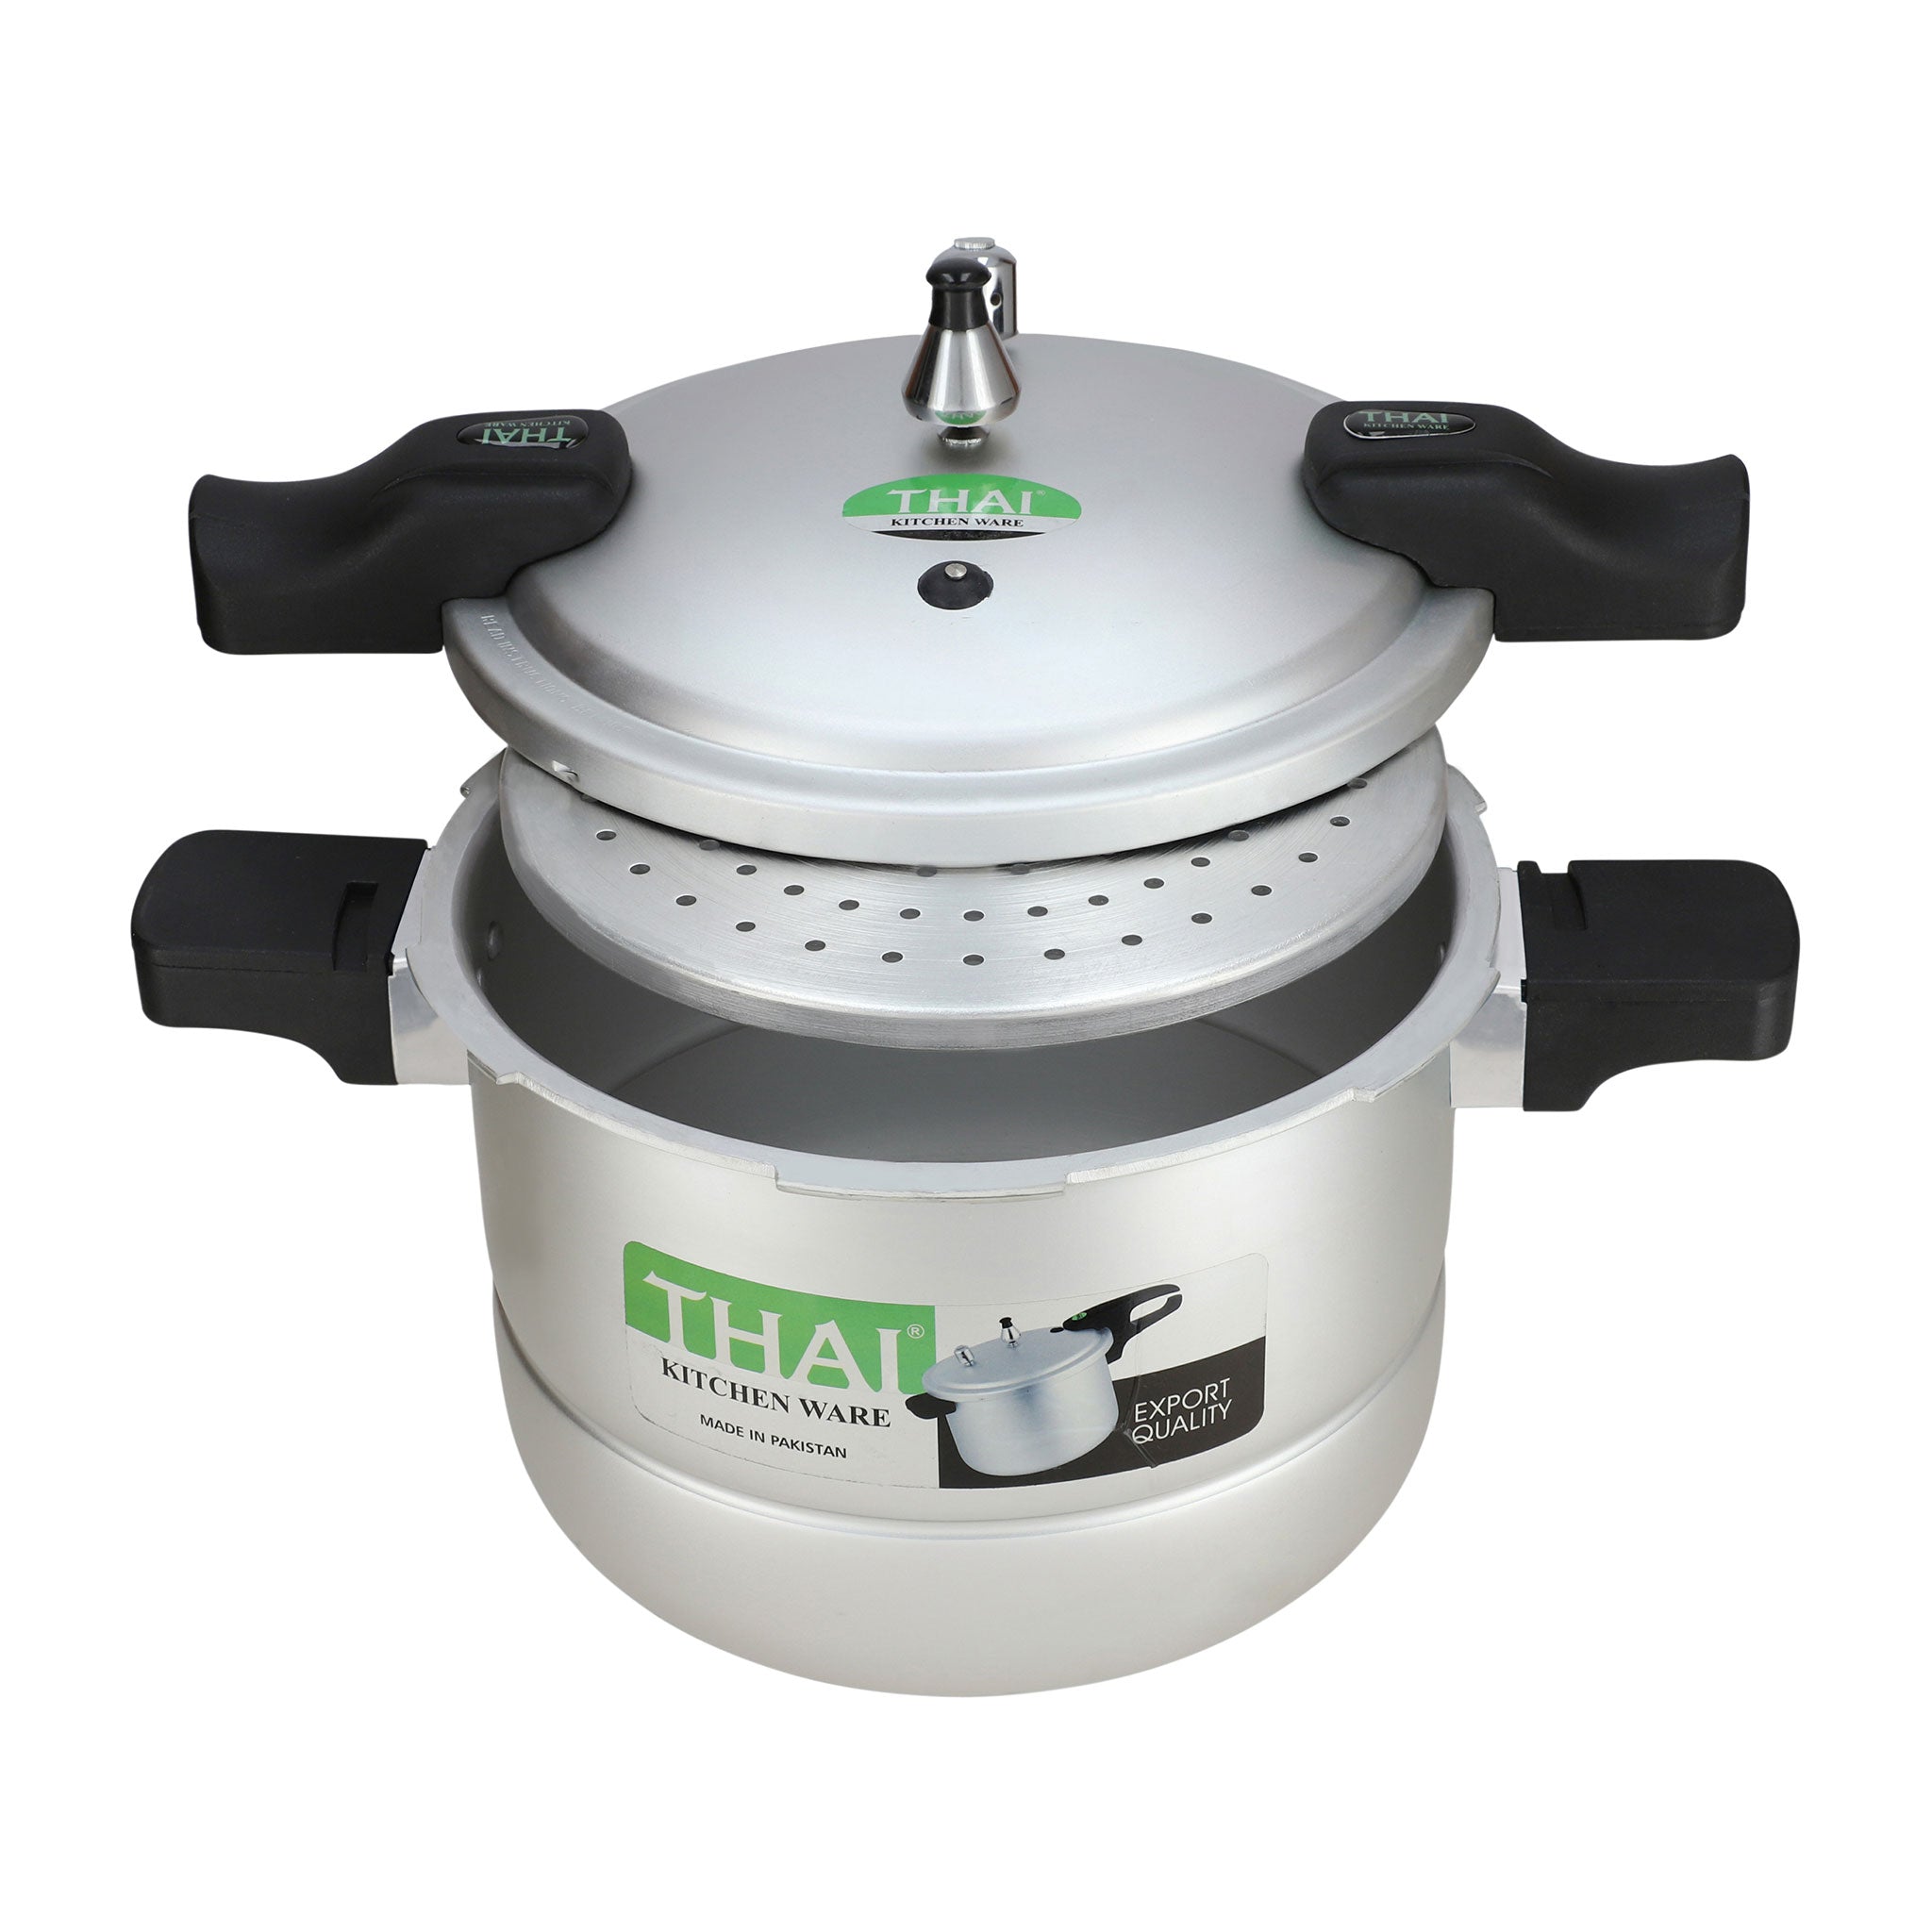 Thai Ultra Cooker + Steamer (2 in 1) 9 Liter